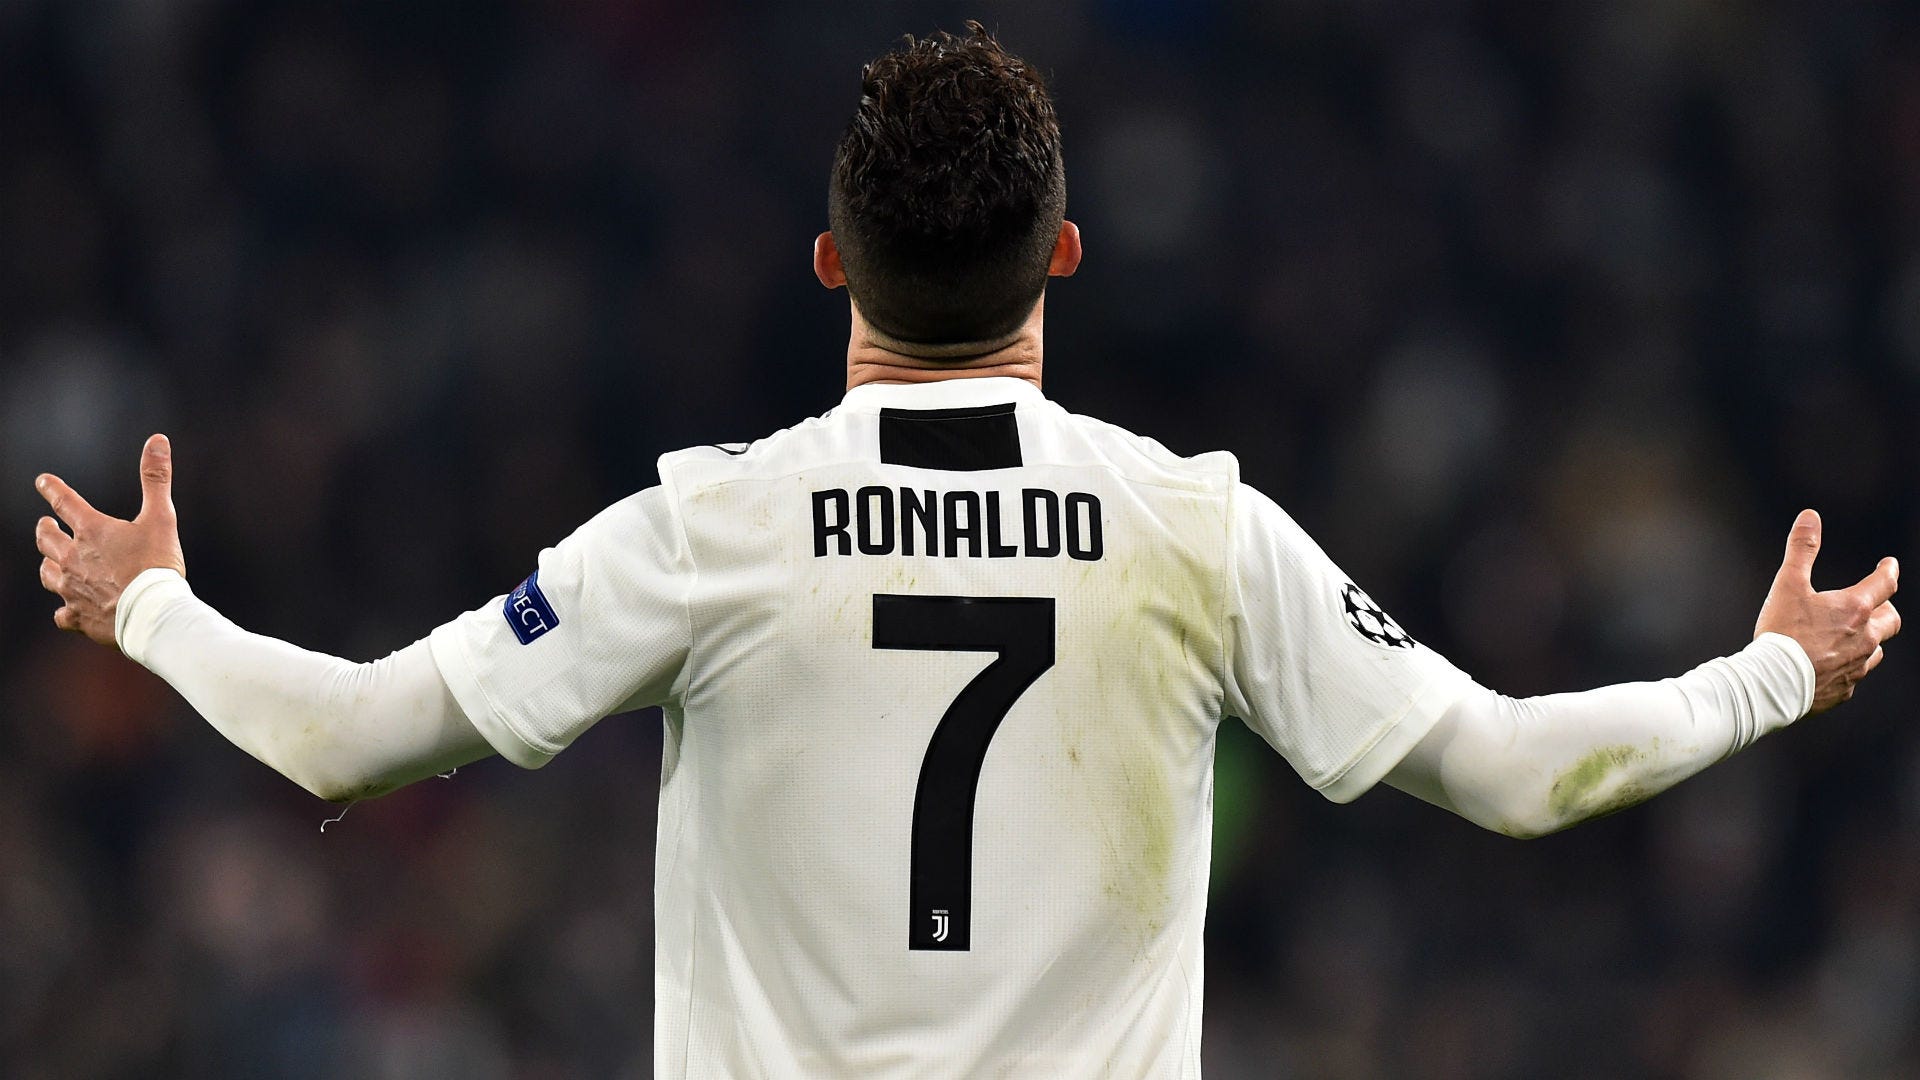 Inside Cristiano Ronaldo's Unexpected Private World